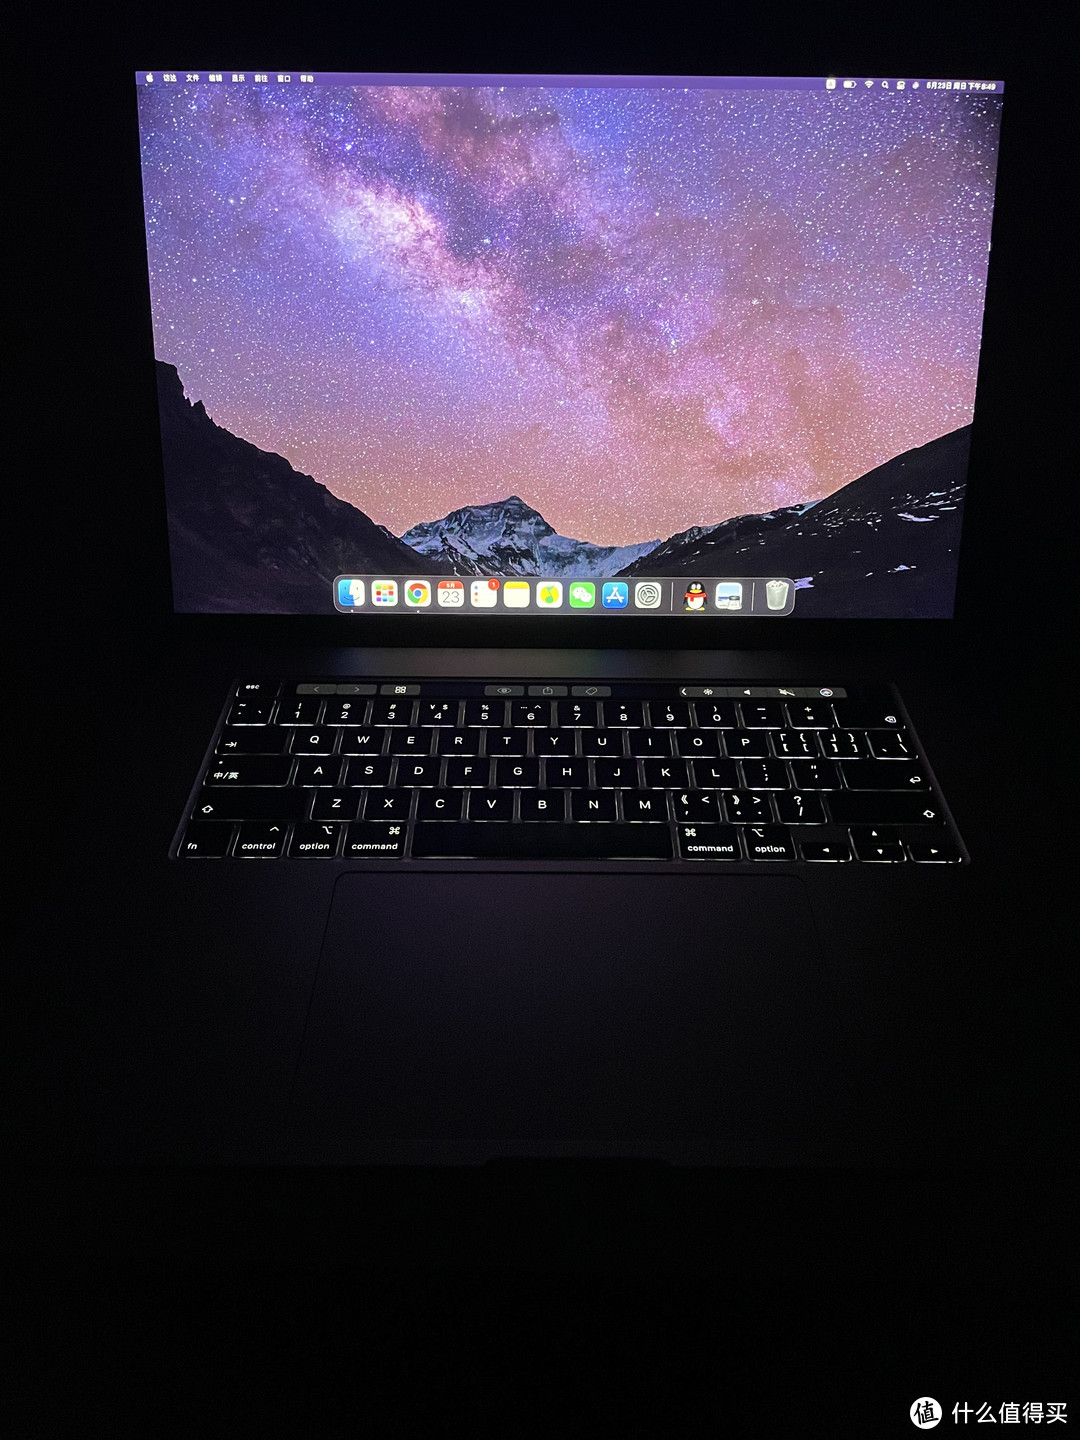 苹果/Apple Macbookpro16寸和Macbookair M1芯片的使用心得与分享